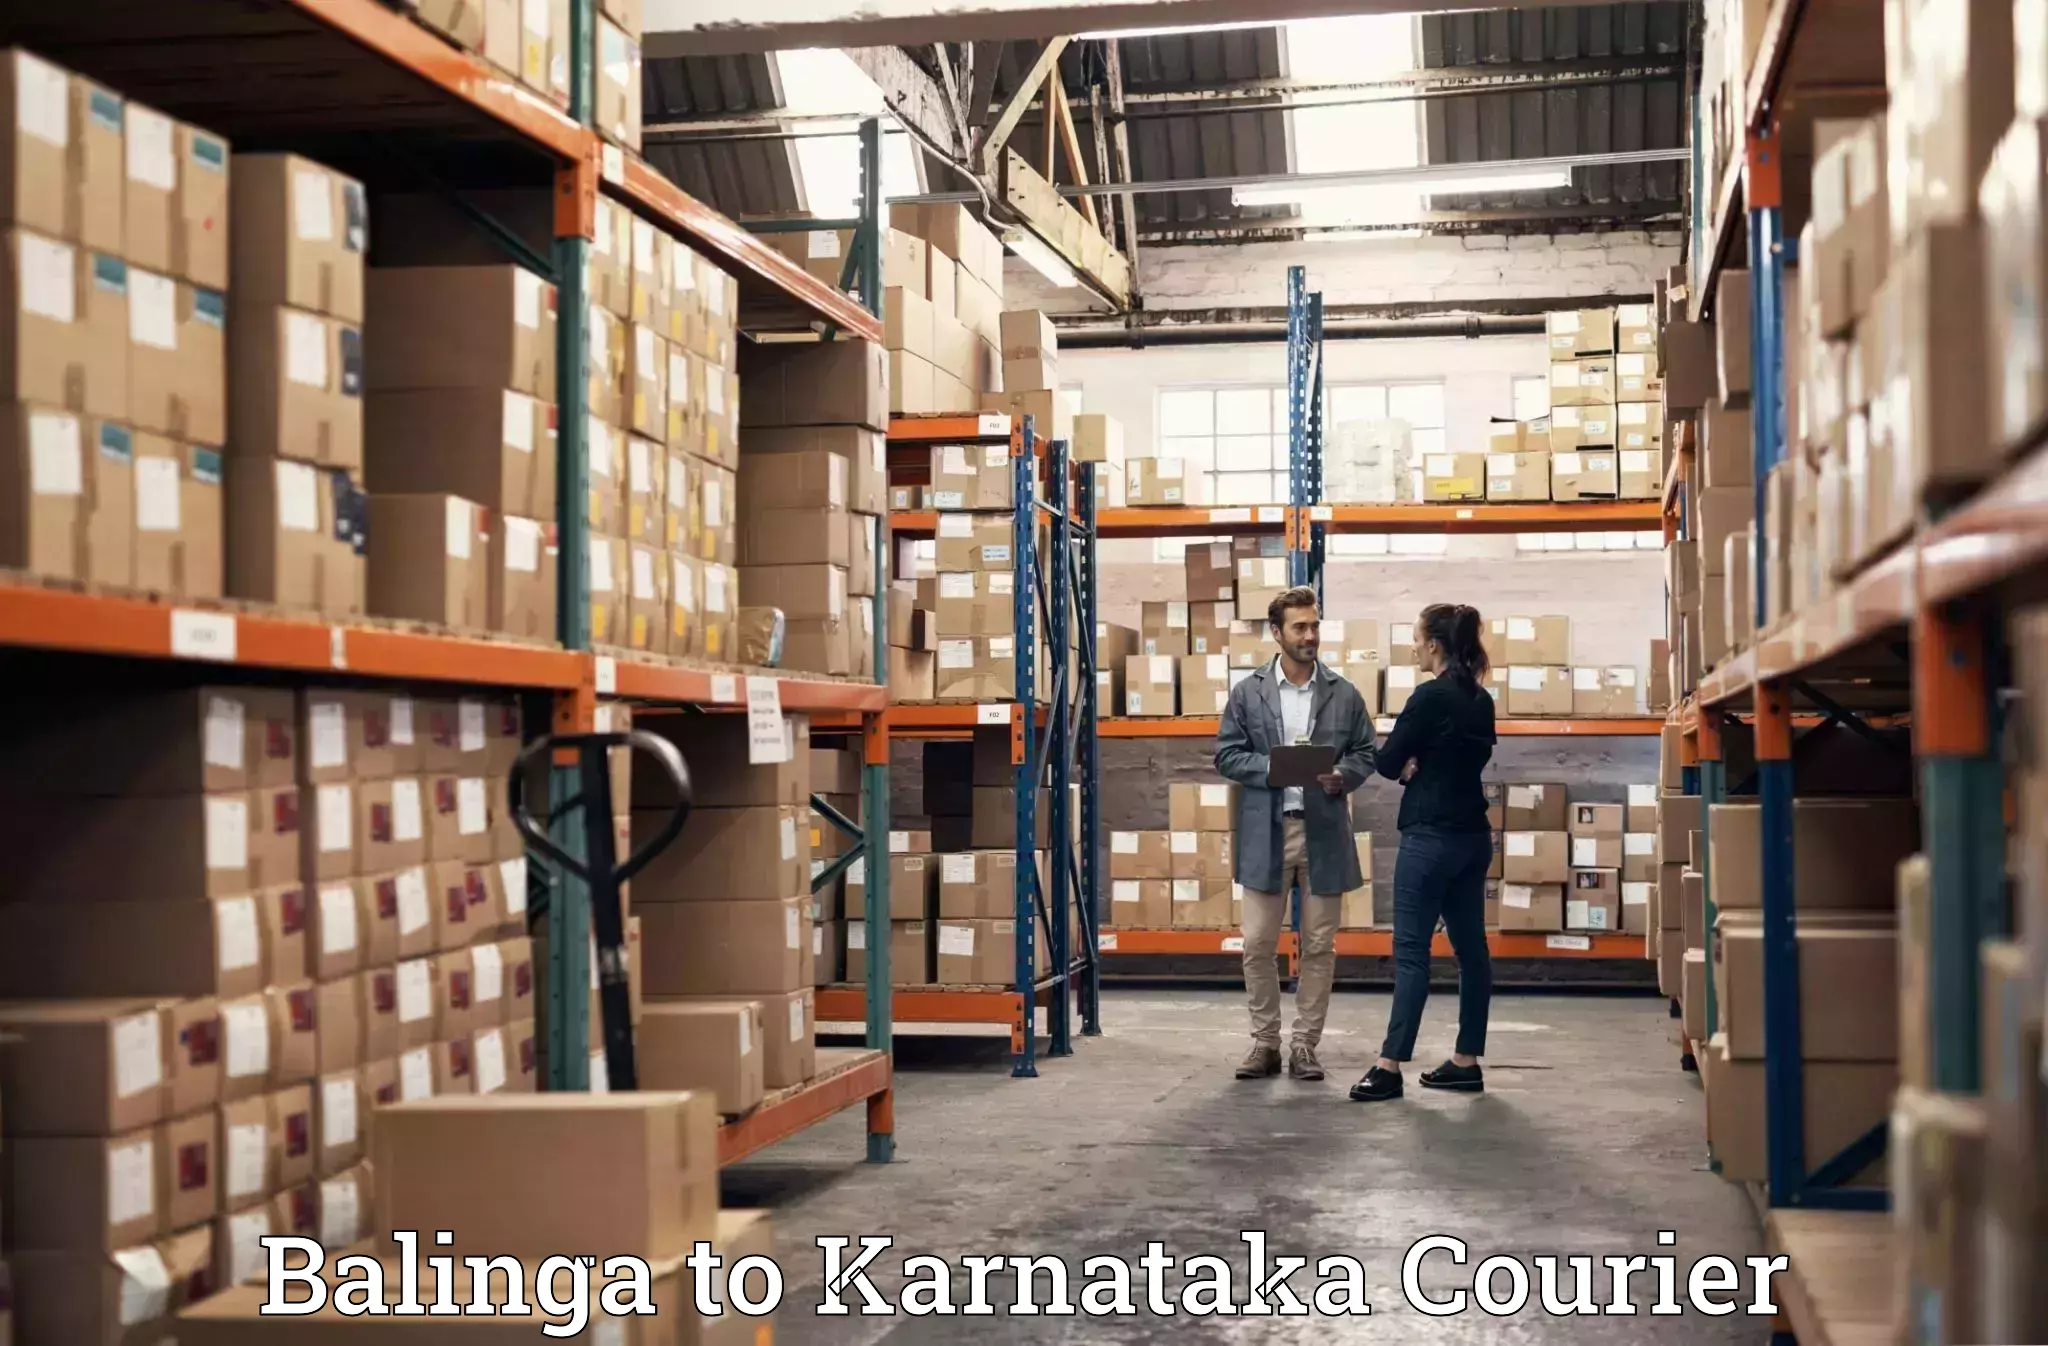 Quality moving company Balinga to Karnataka